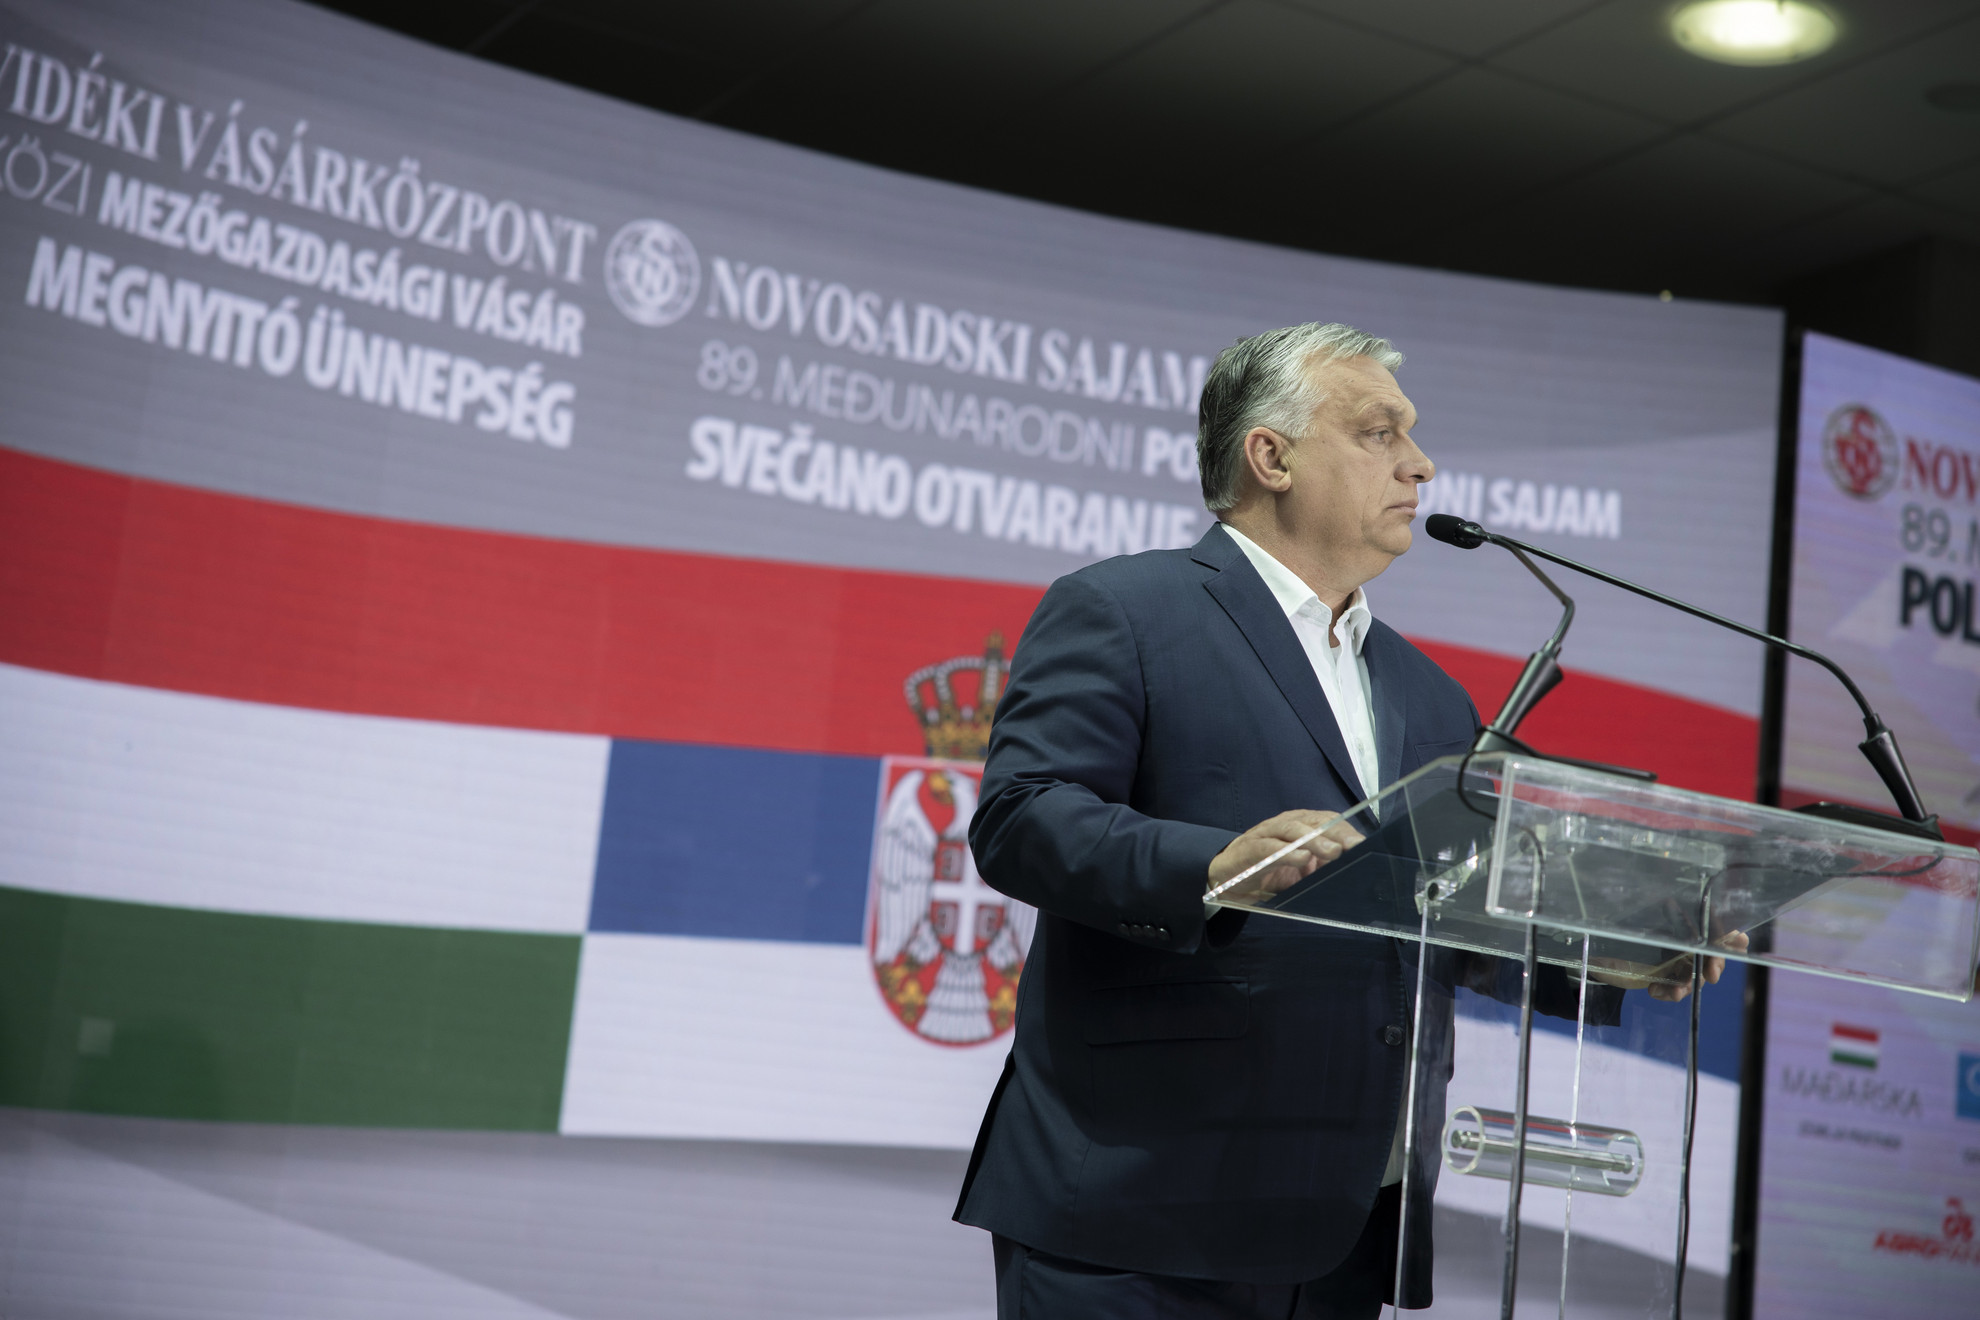 Orbán Viktor miniszterelnök beszédet mond a 89. Újvidéki Nemzetközi Mezőgazdasági Vásár megnyitóján 2022. május 21-én